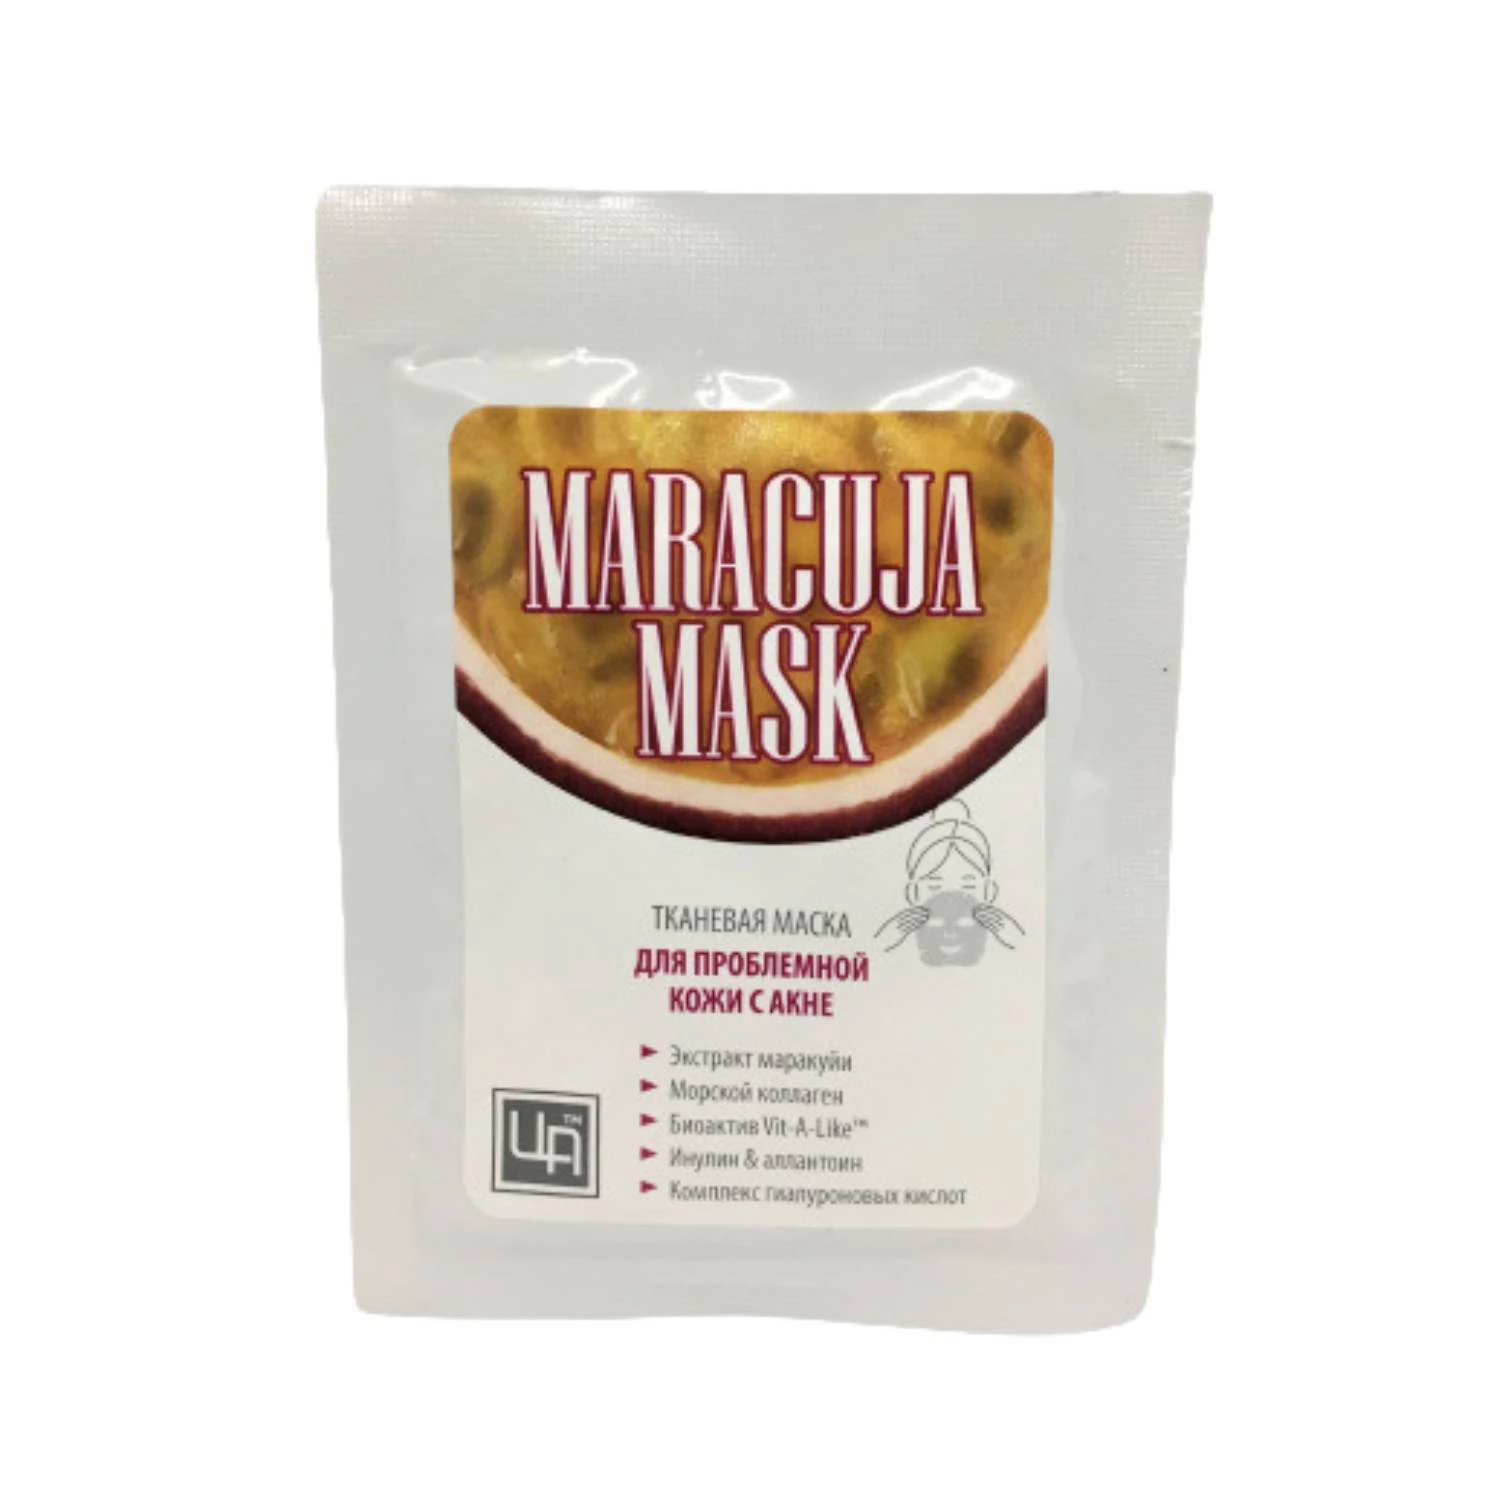 Маска тканевая для проблемной кожи лица с акне Maracuja mask фото 1